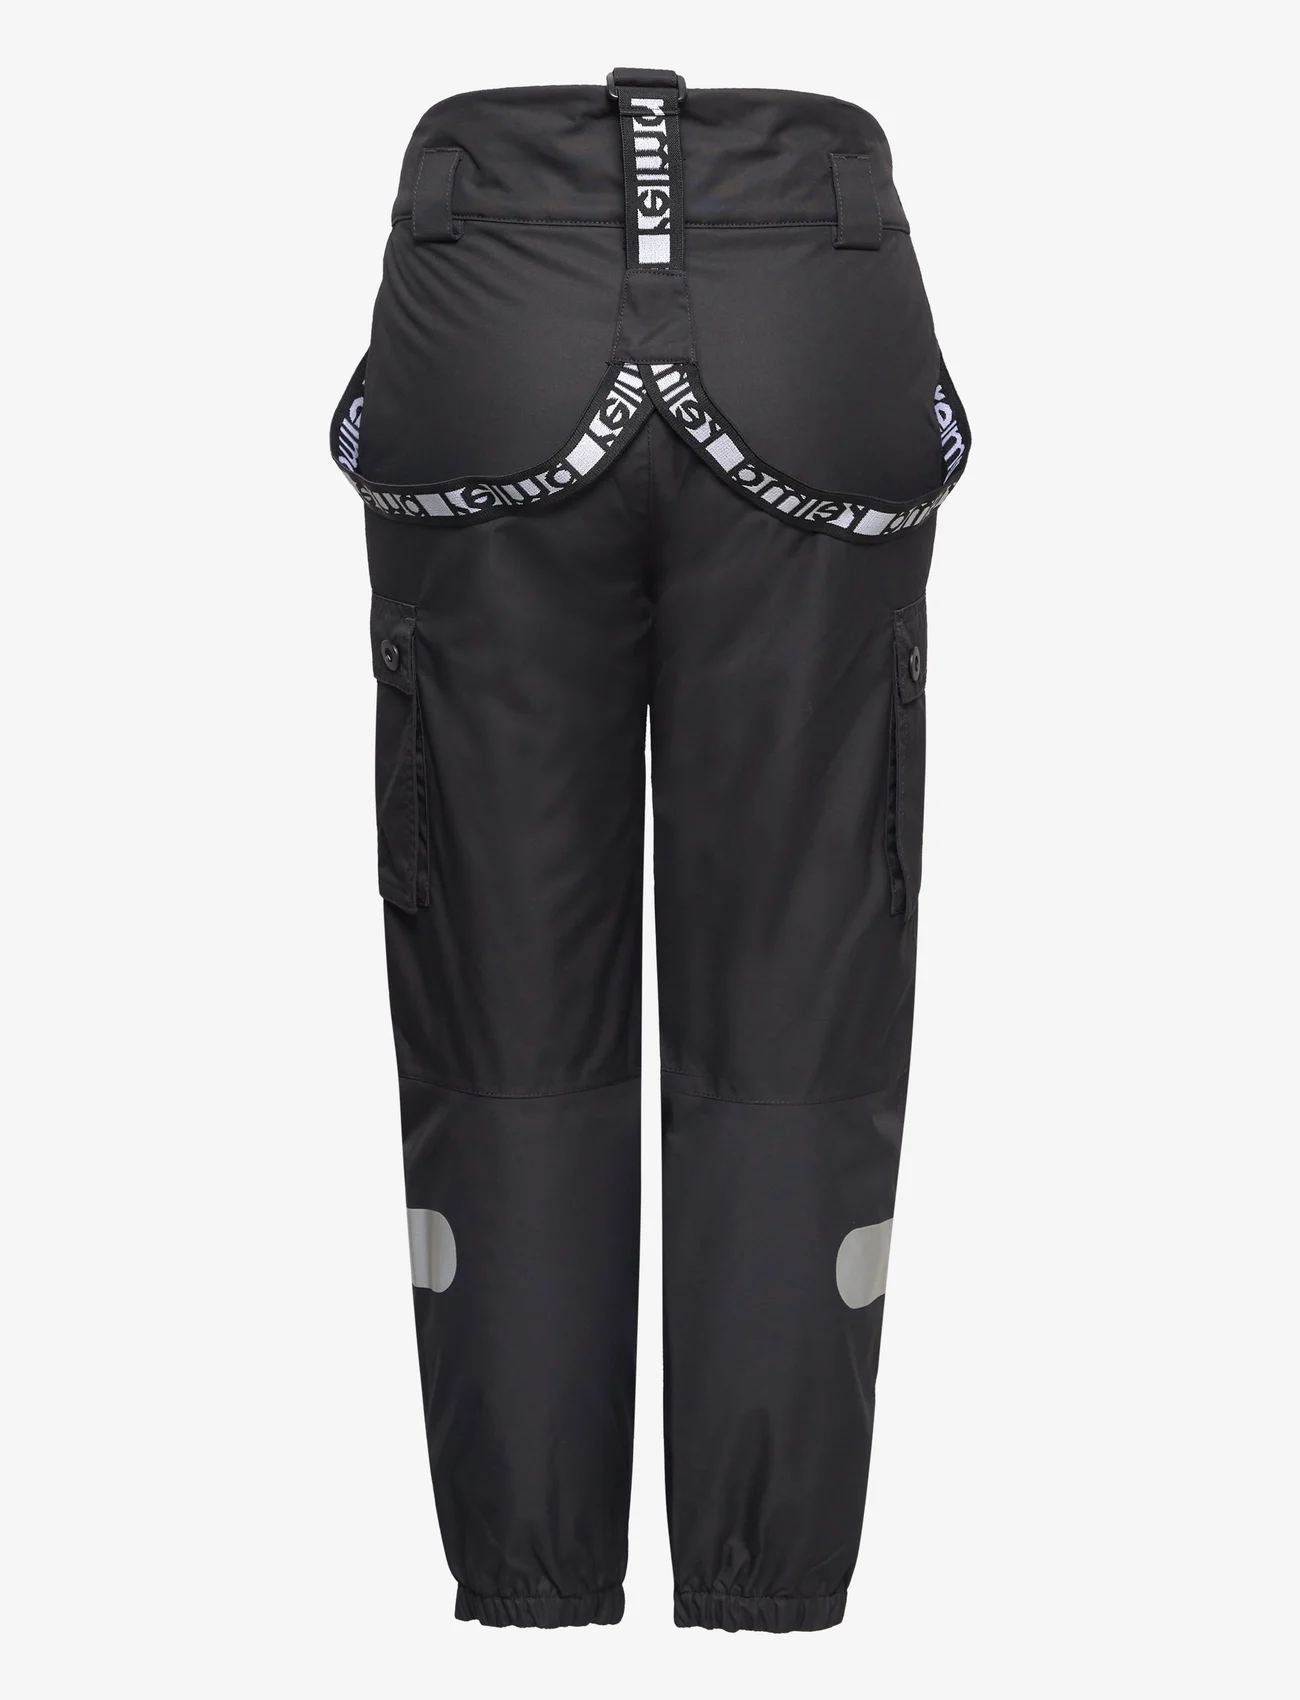 Reima - Reimatec pants, Tiksi - outdoorhosen - black - 1